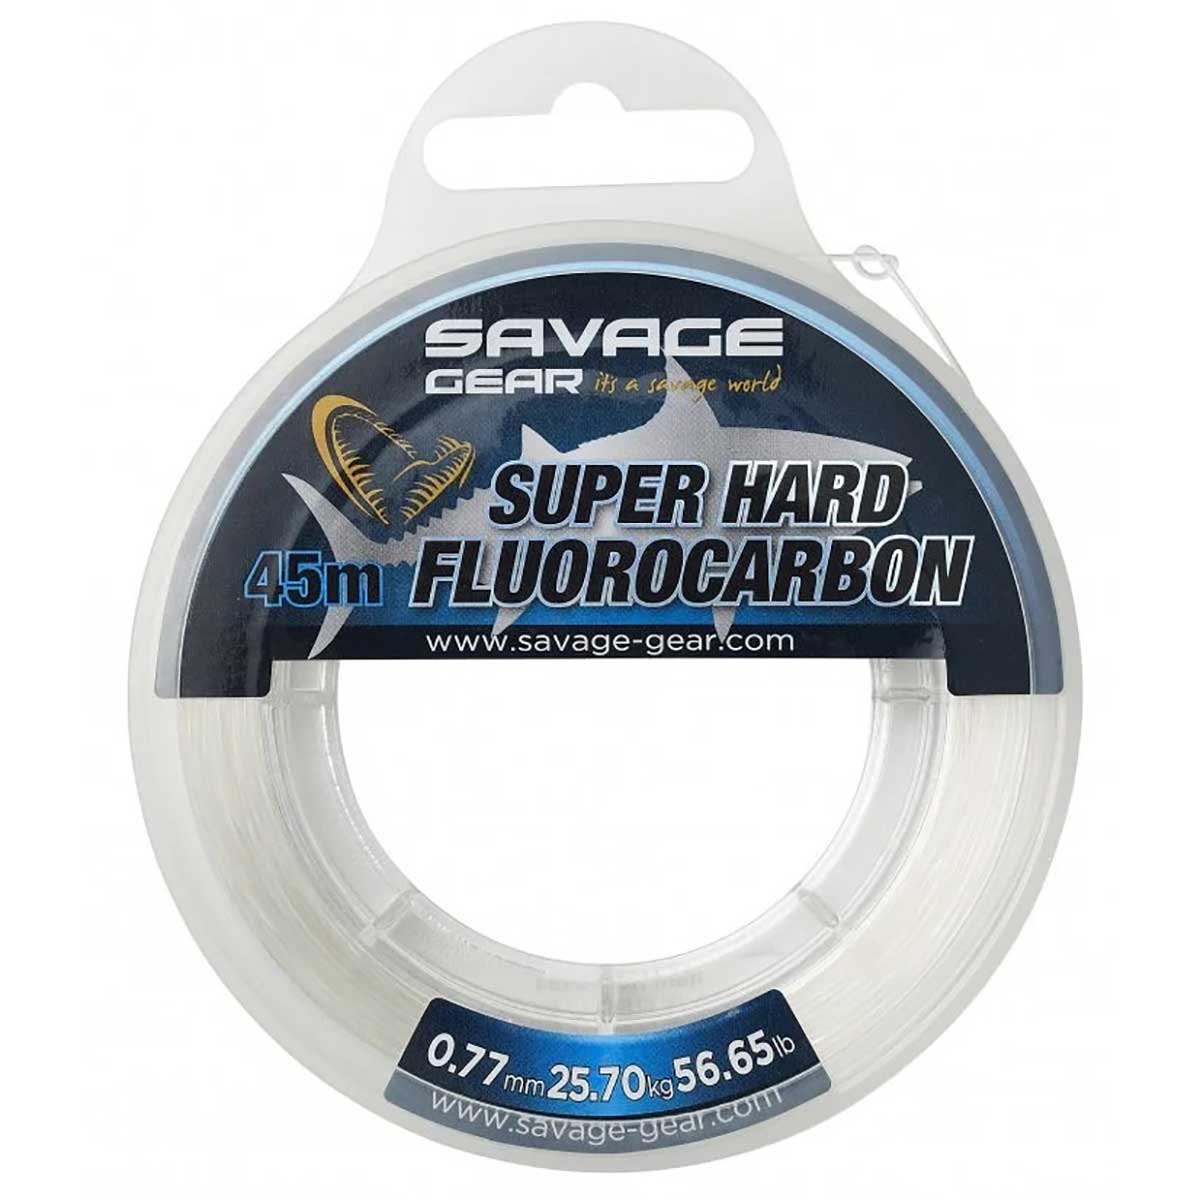 Savage Gear Super Hard Fluorocarbon 45 mt 0.77mm Flourocarbon Misina,25.70Kg çeker değerine sahip savage gear kalitesinde %100 flourocarbon misina serisi